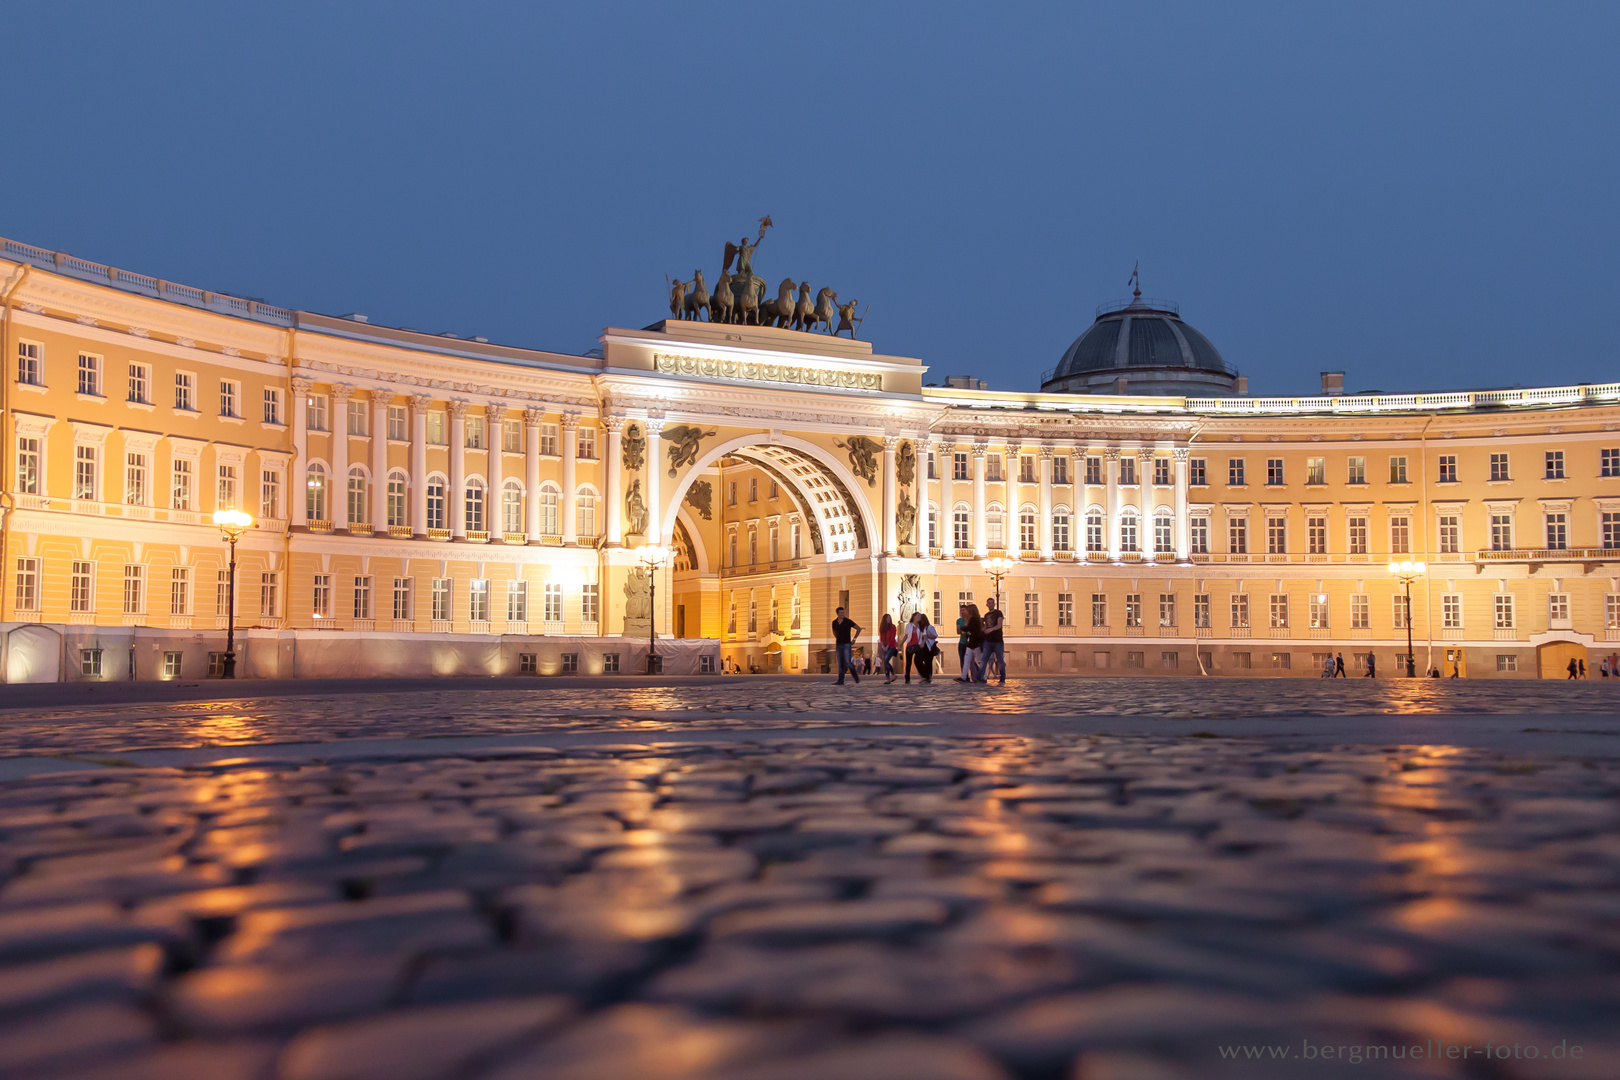 Palastplatz - St. Petersburg